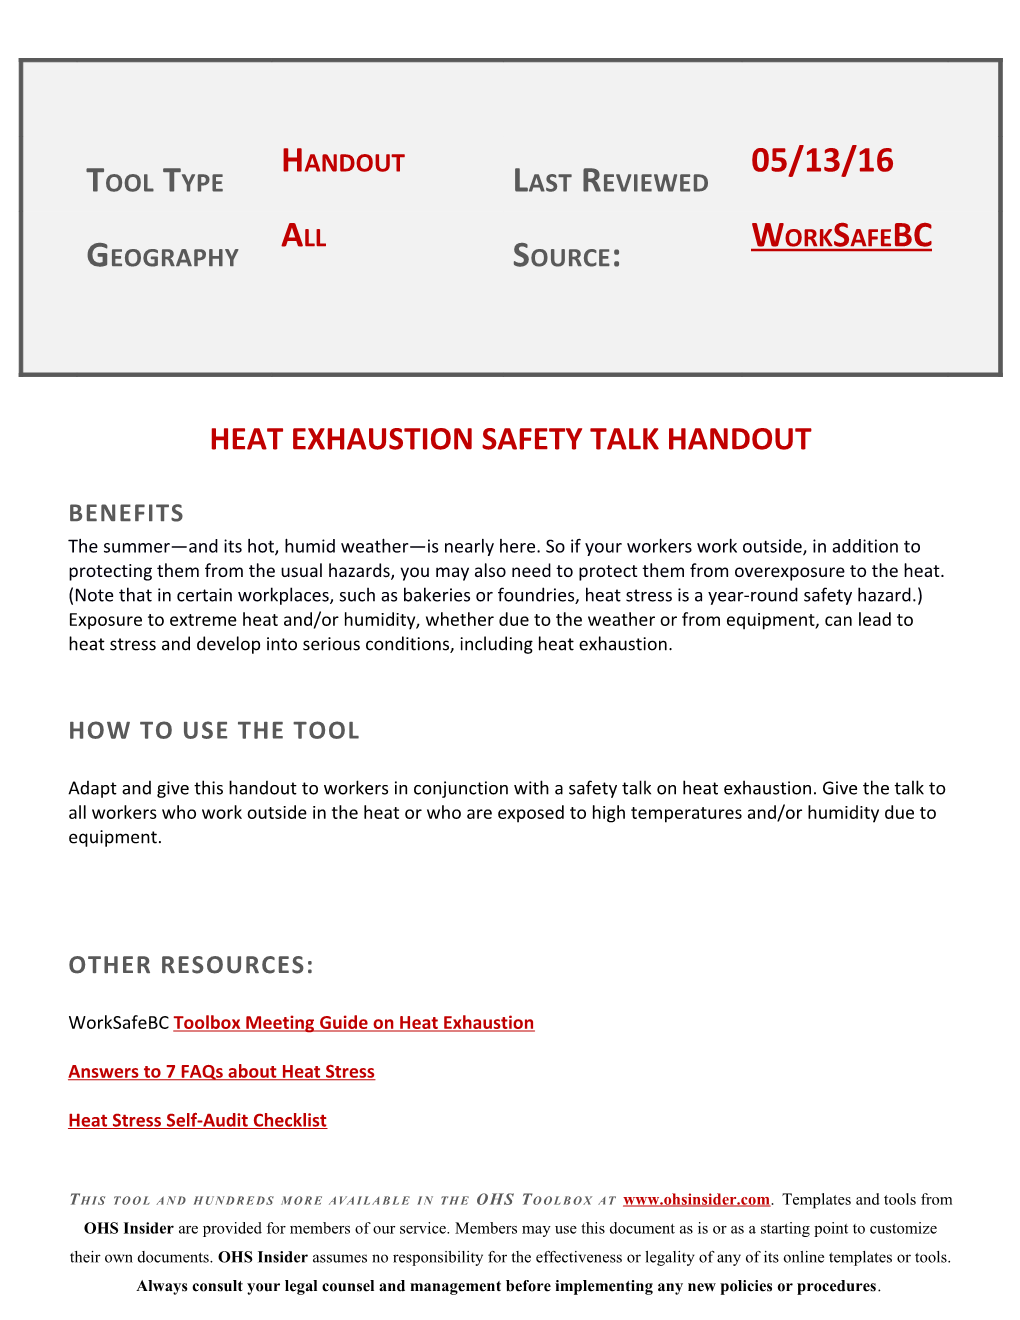 Heat Exhaustion Safety Talk Handout